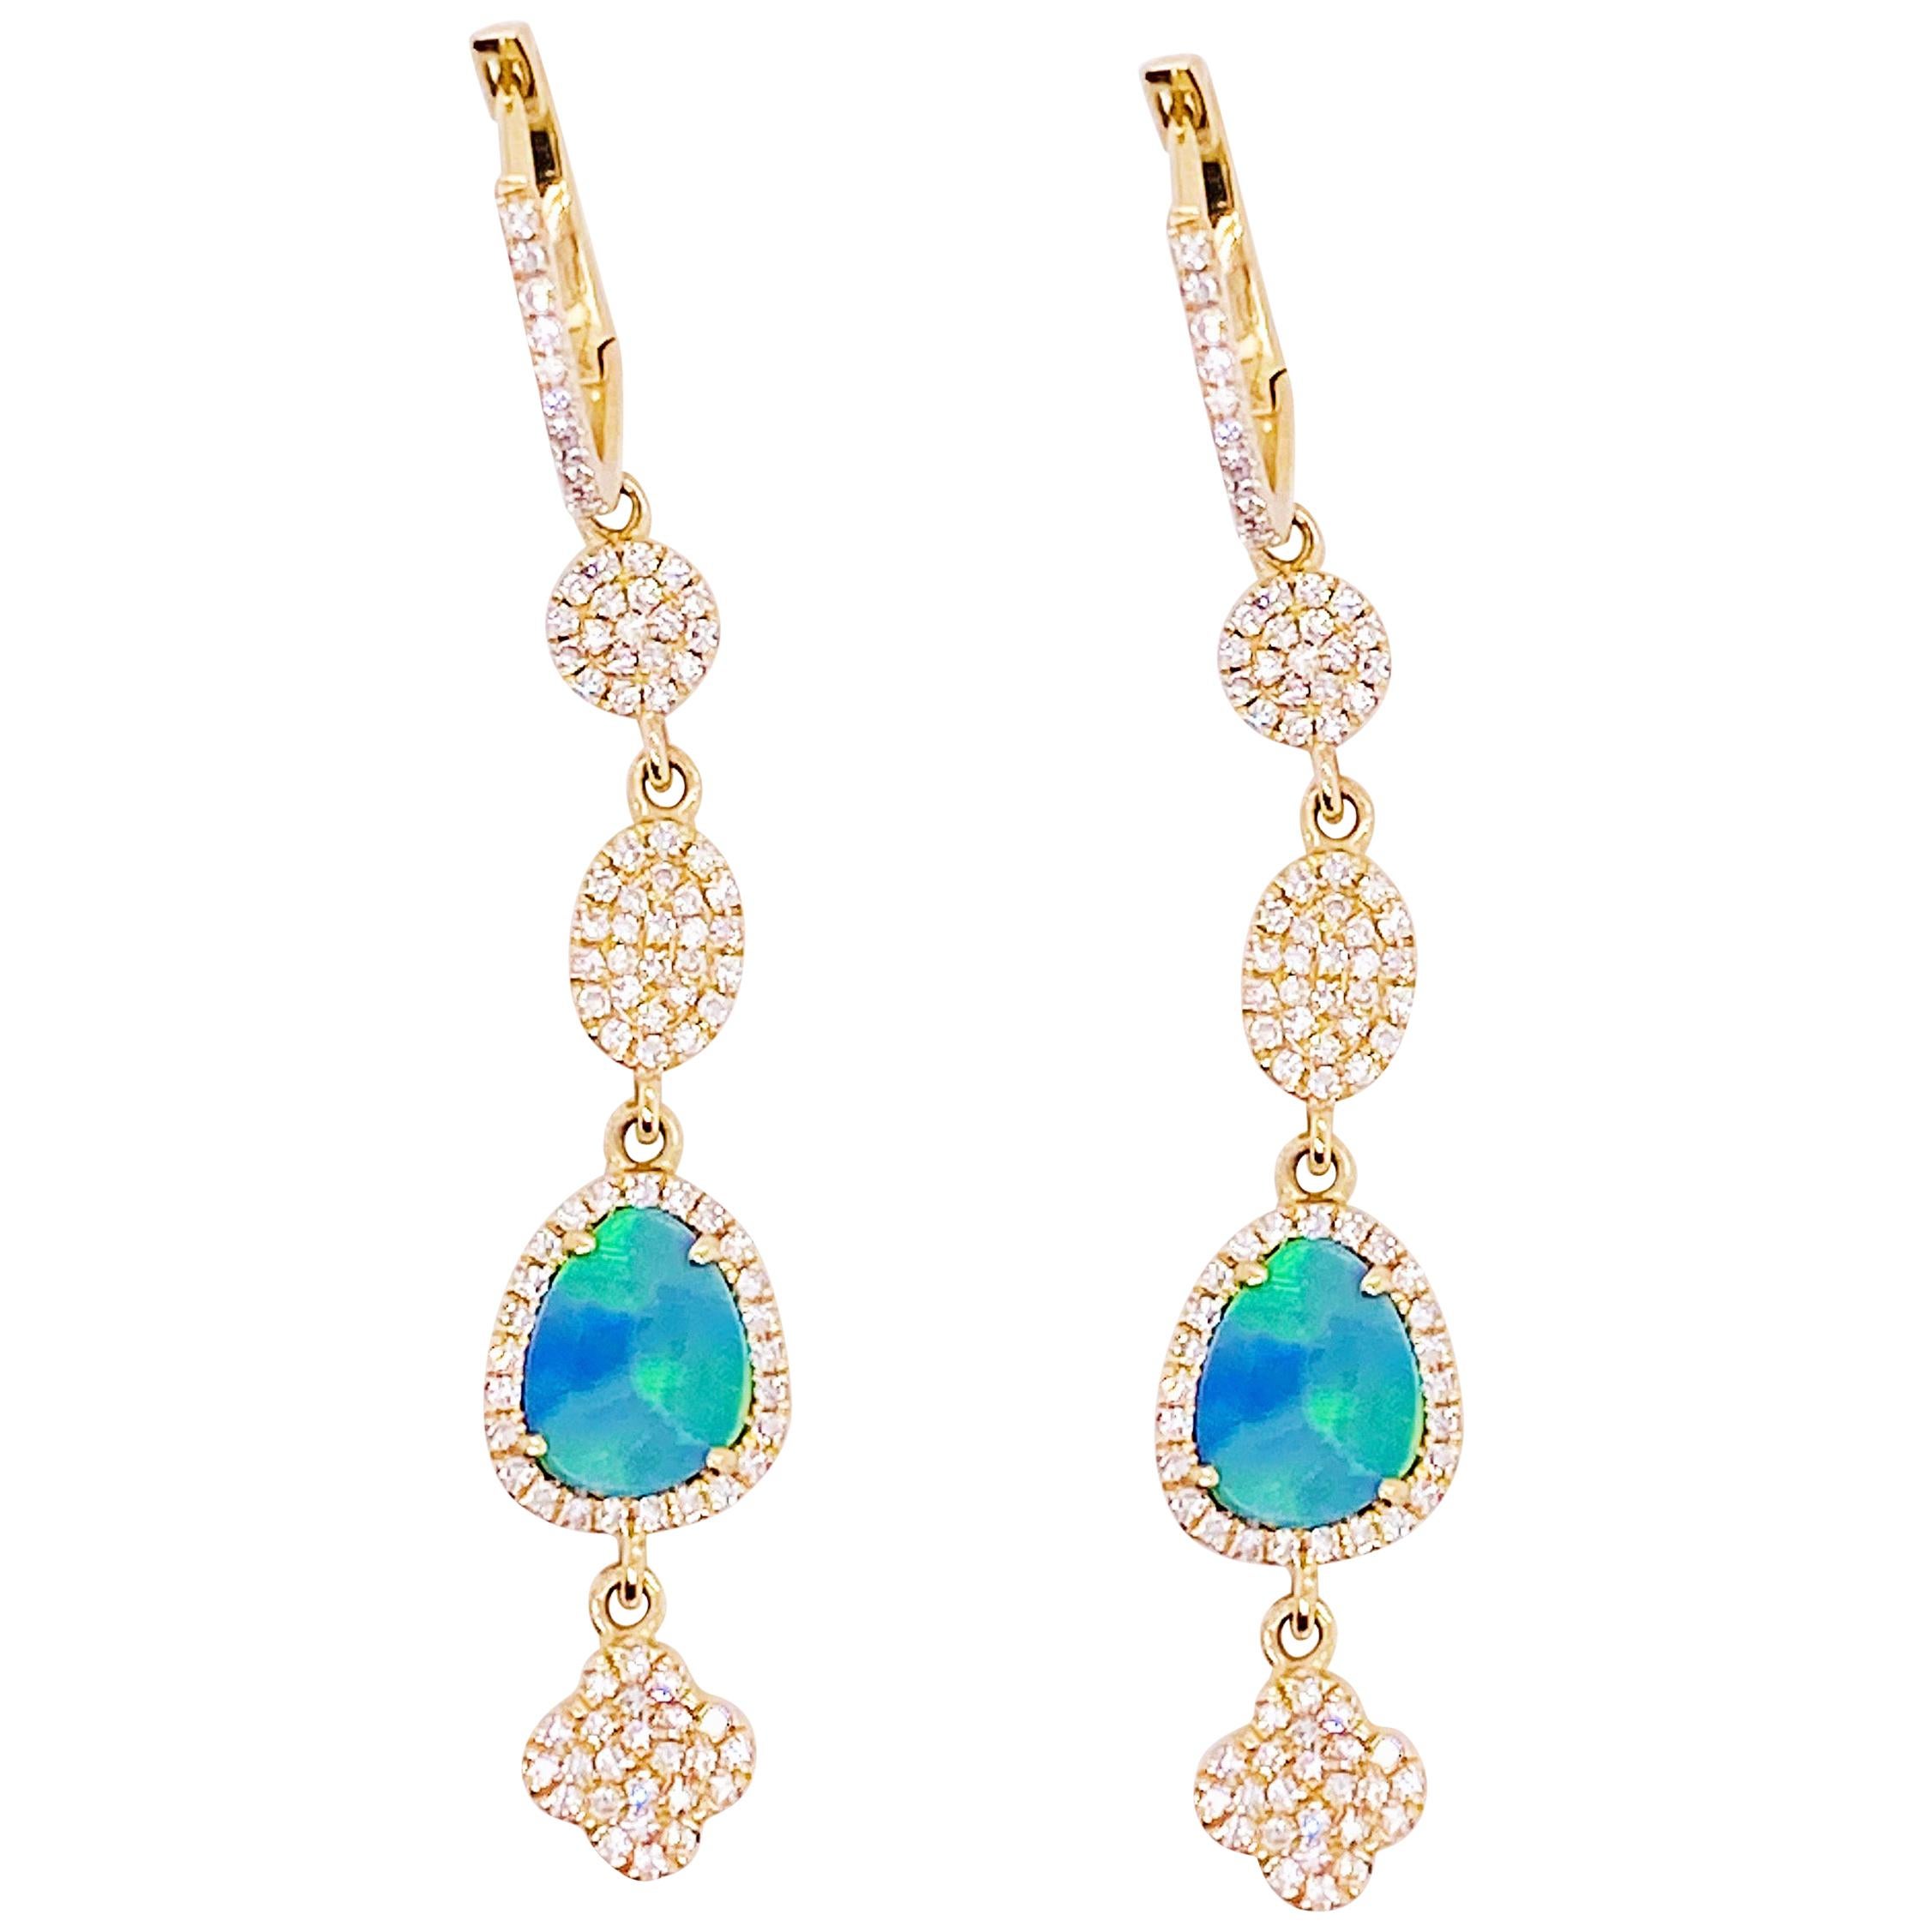 Diamond & Opal Earring Dangles 14 Karat Gold 2.25 Carat Opal & Diamond Earrings